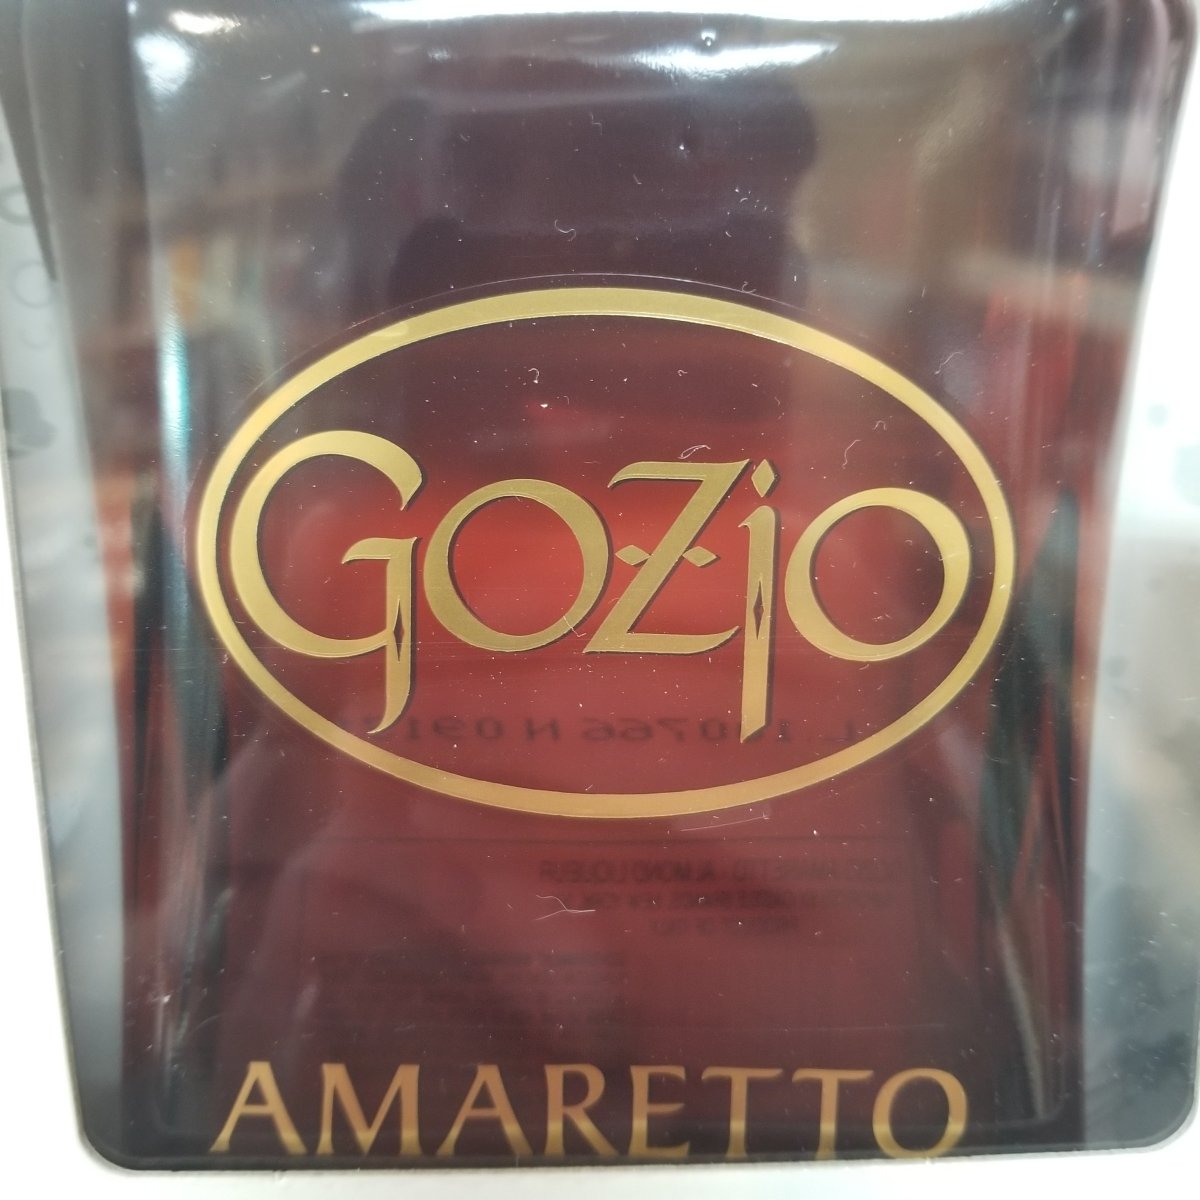 Gozio Amaretto 750Ml (Better than Disaronno) - Sip & Say